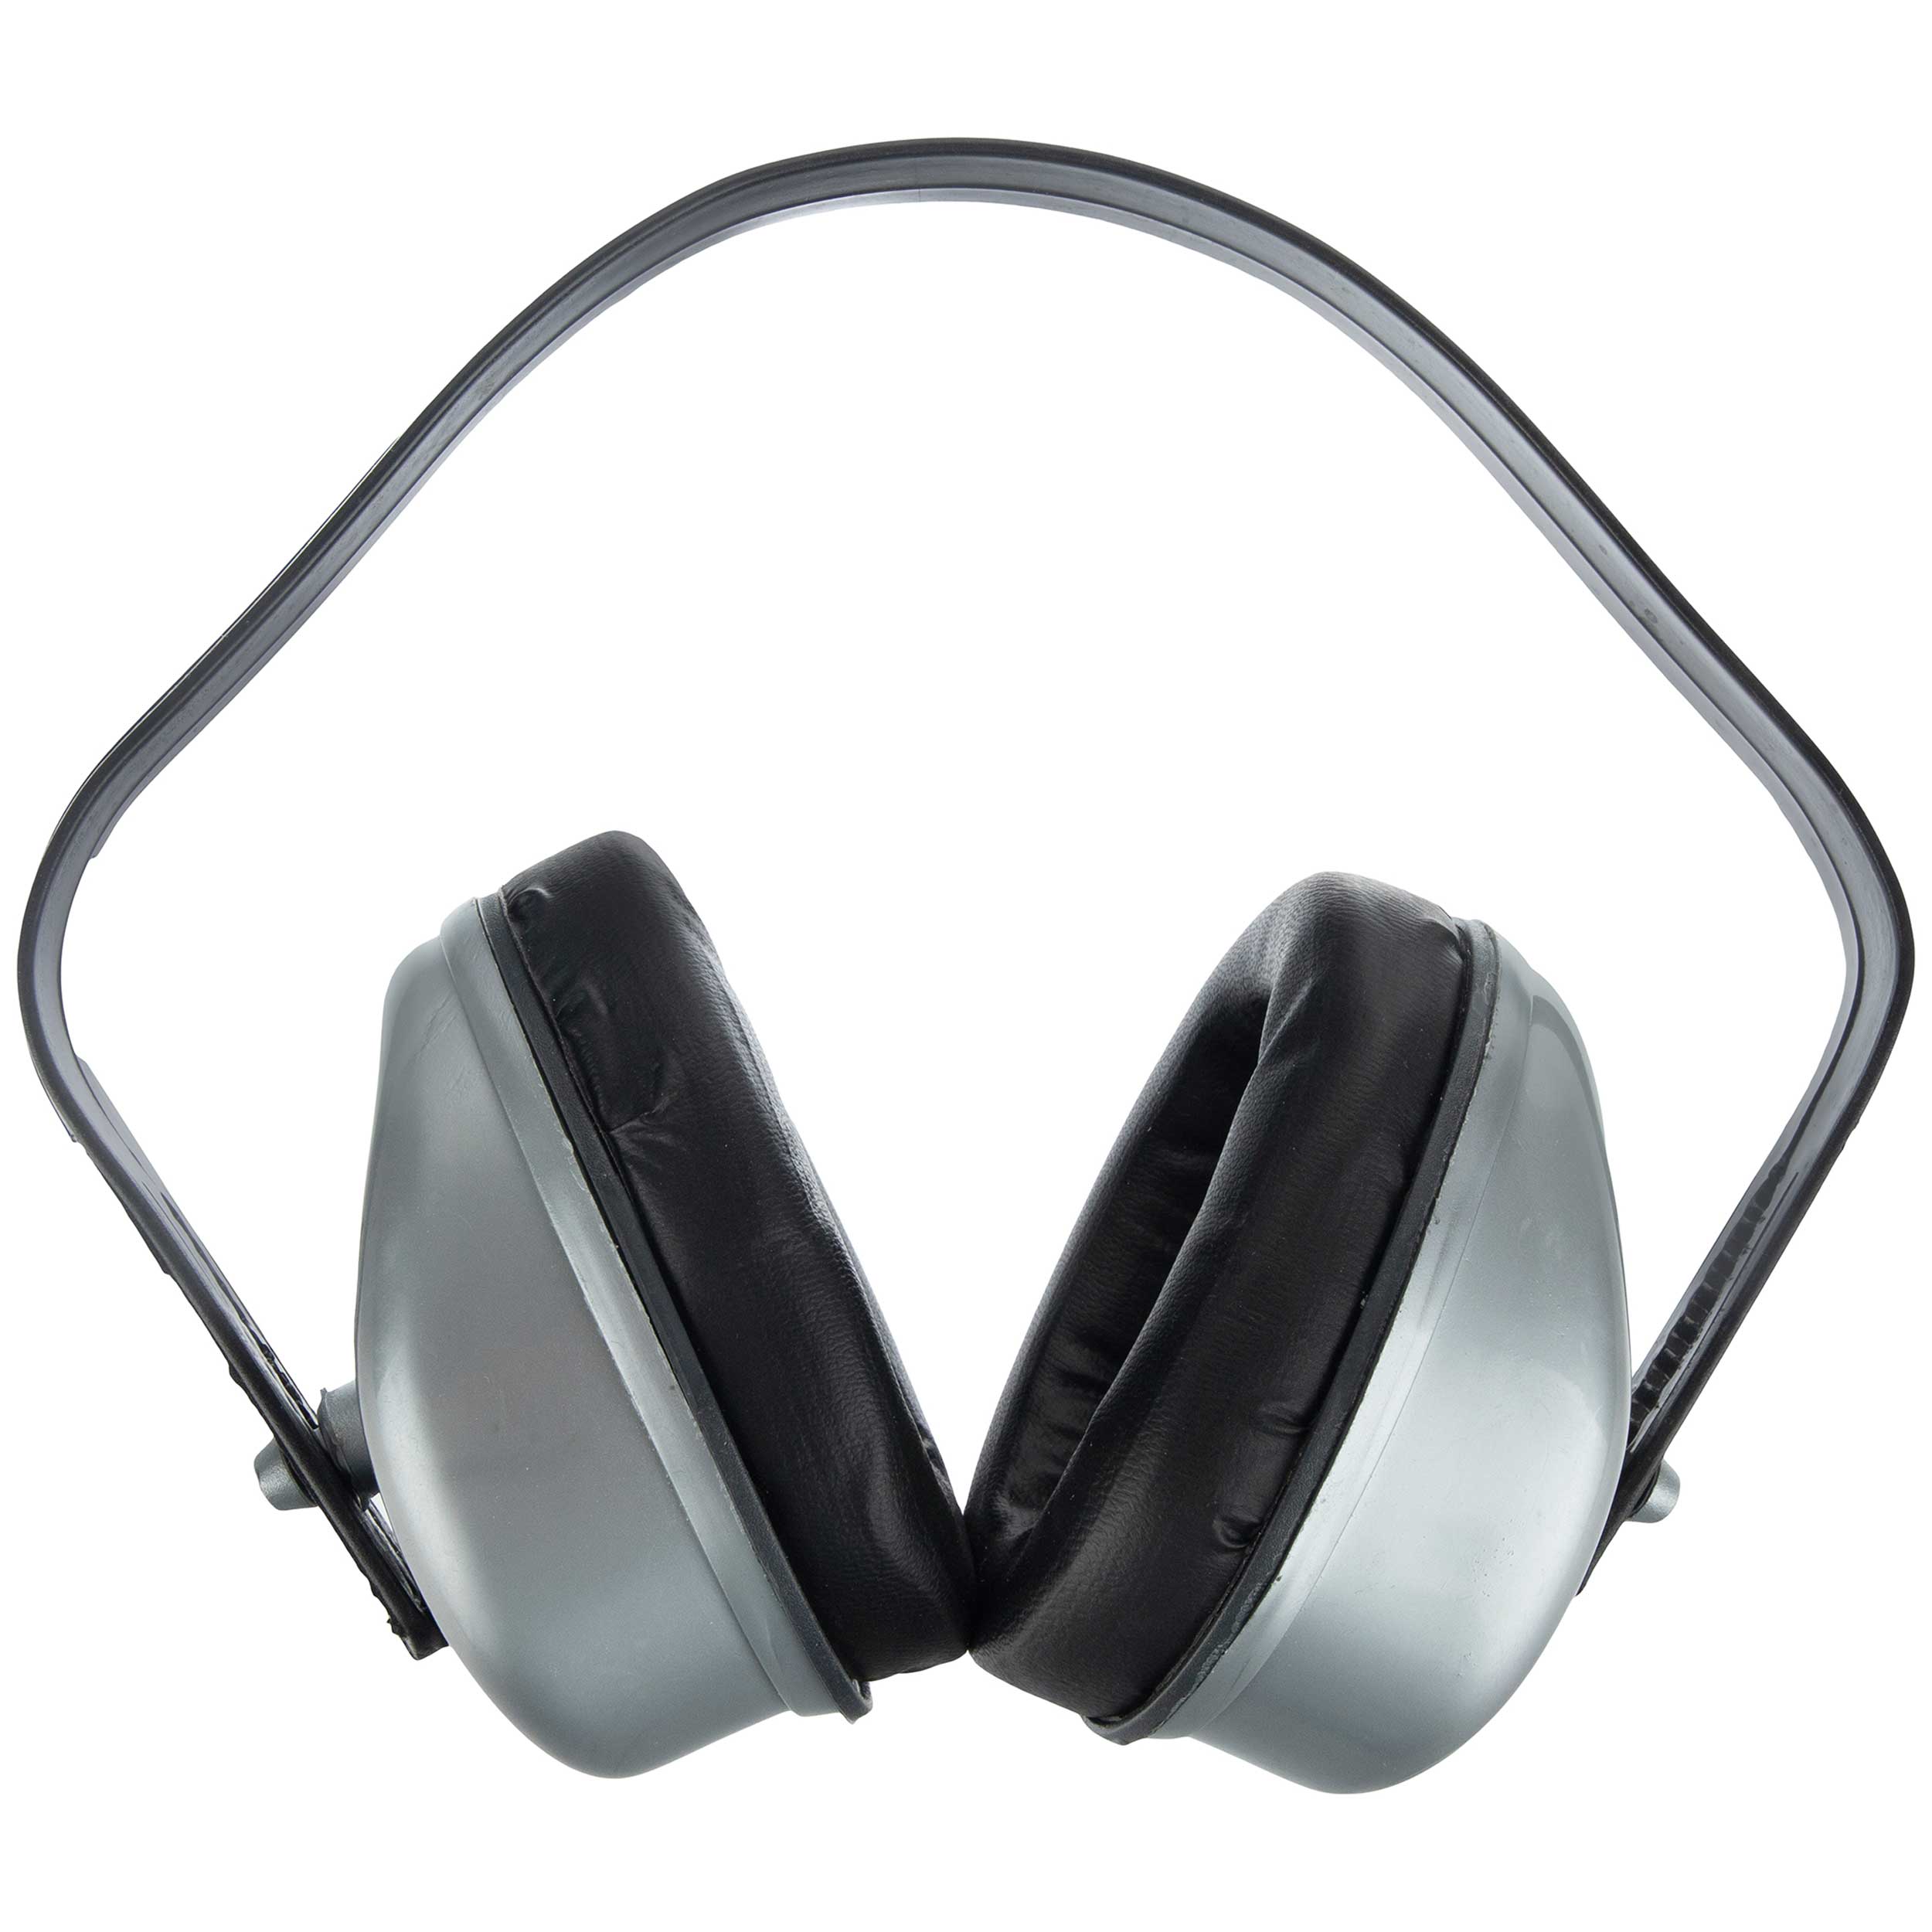 خرید صداگیر گوش ارزان قیمت + 12 مدل با کیفیت